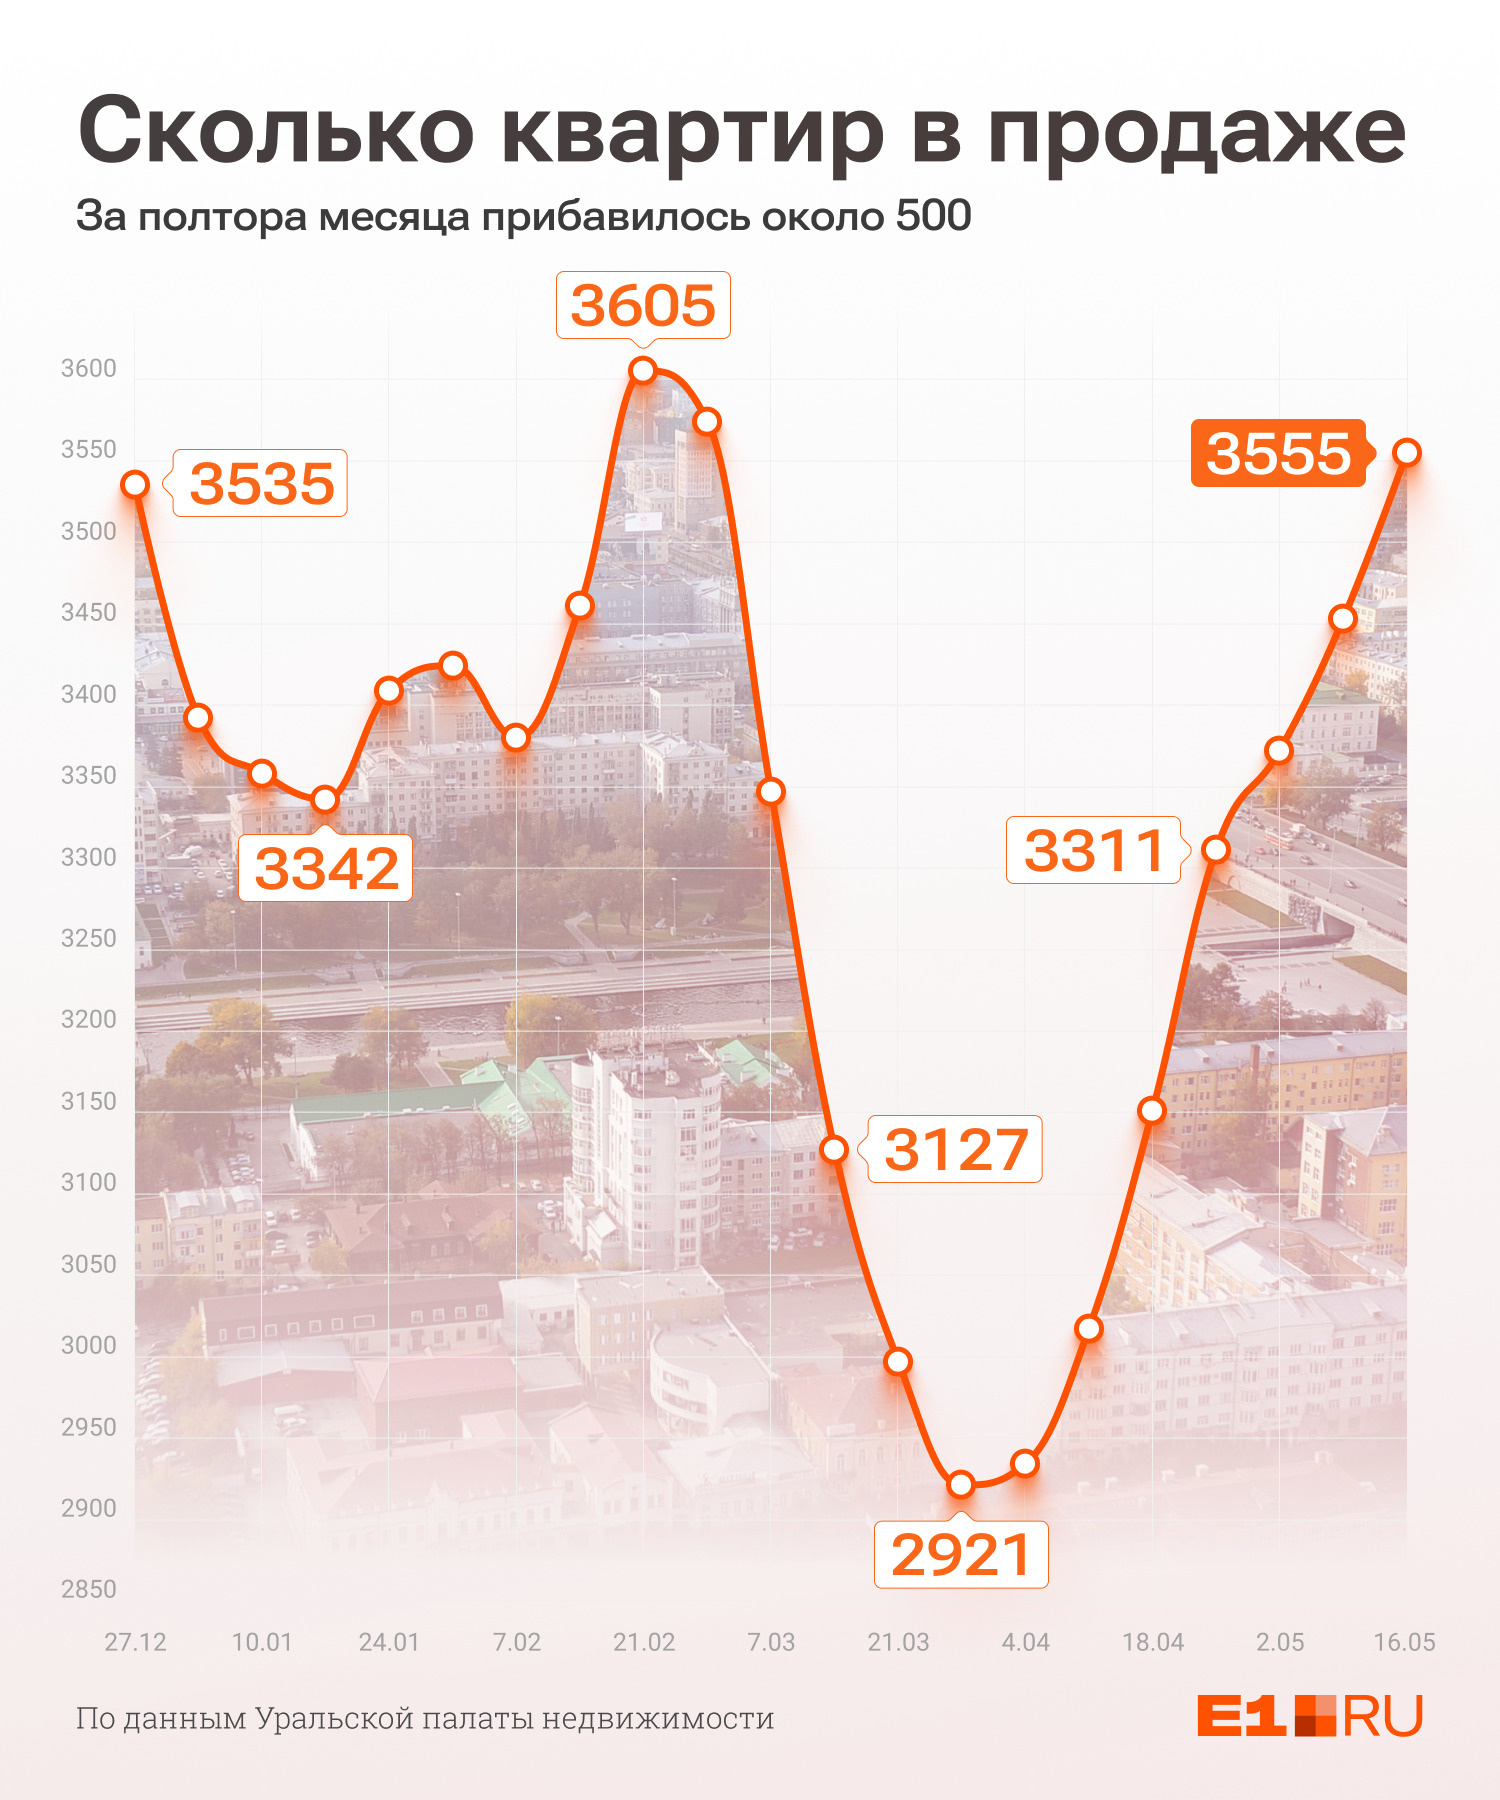 Количество квартир, которые начали продавать в Екатеринбурге постепенно увеличивается